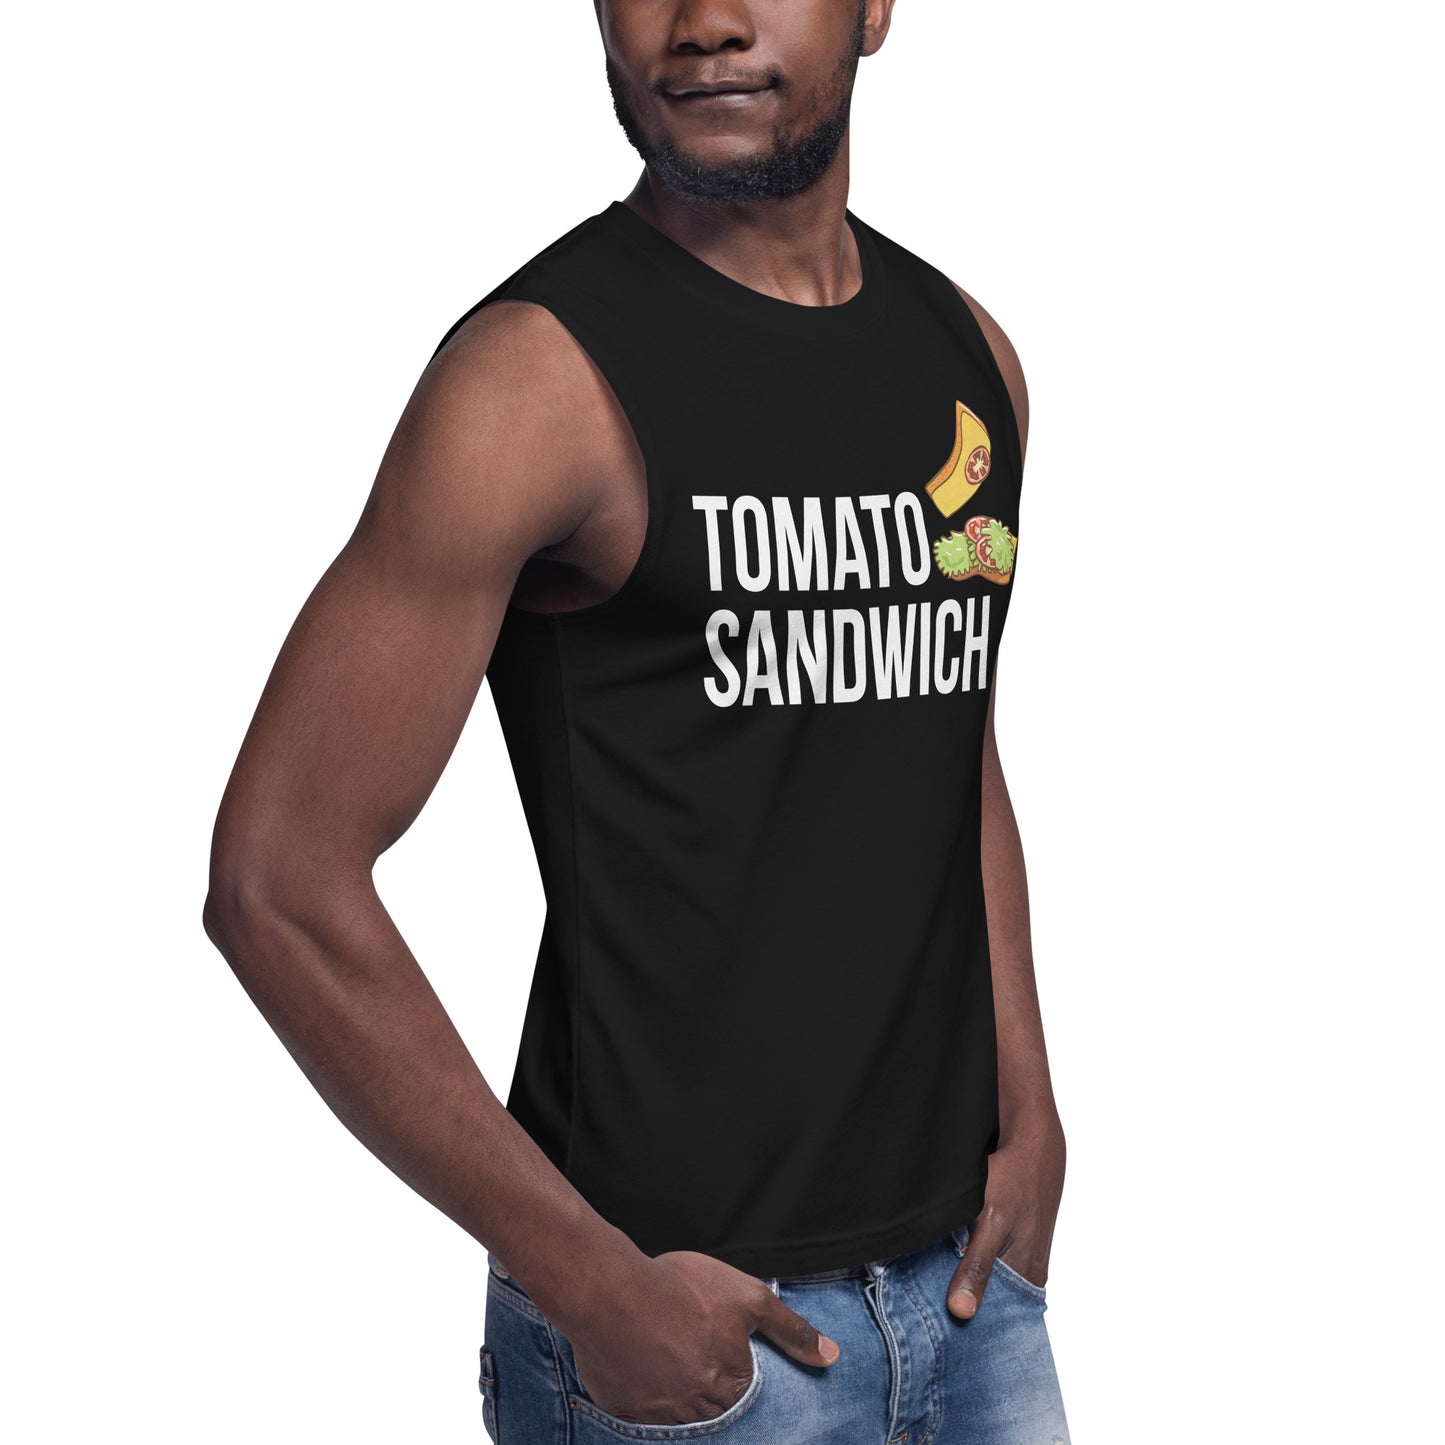 Tomato Sandwich / Unisex Muscle Shirt